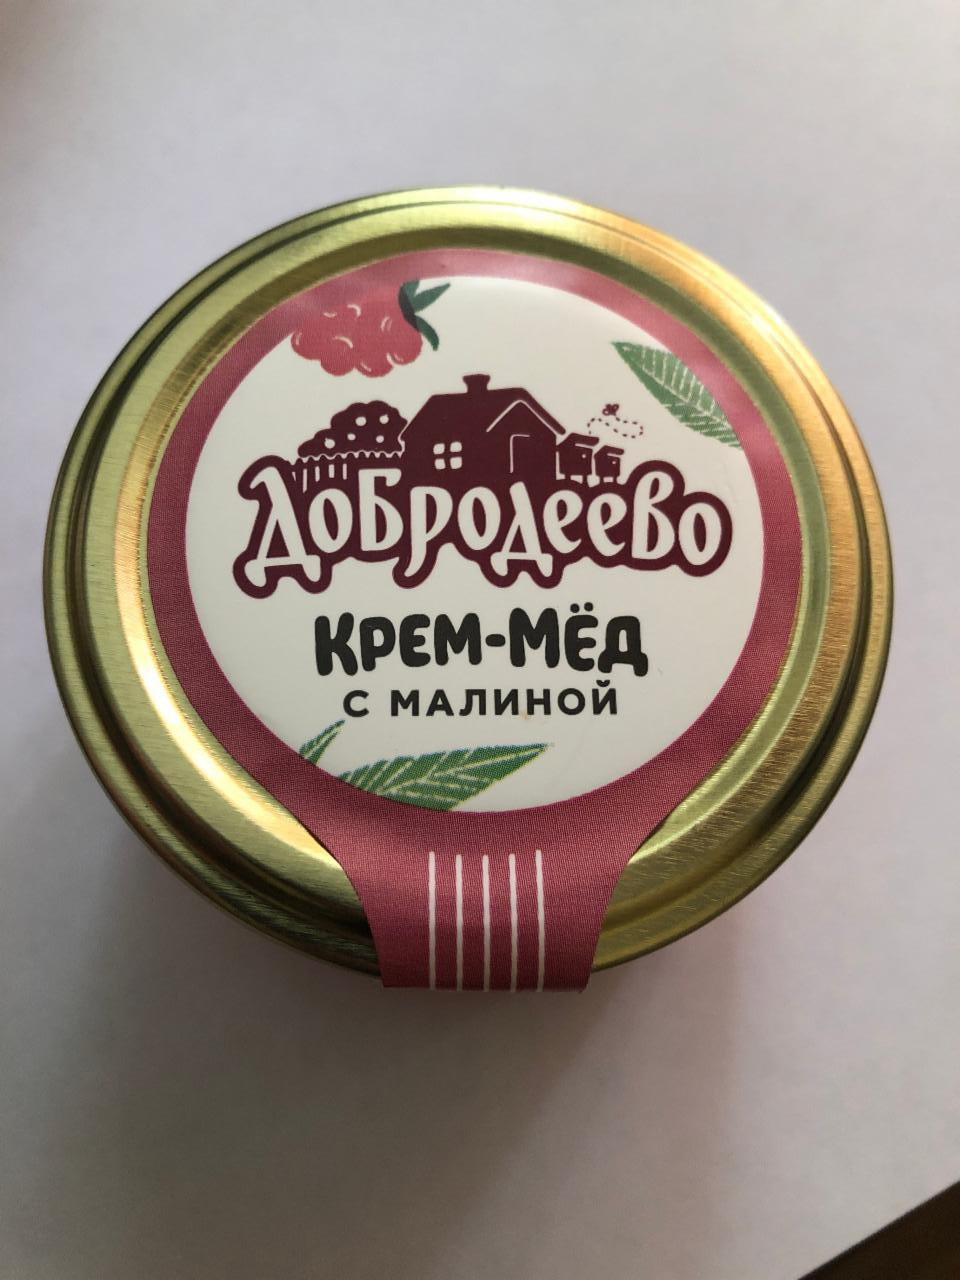 Фото - Крем-мёд с малиной Добродеево